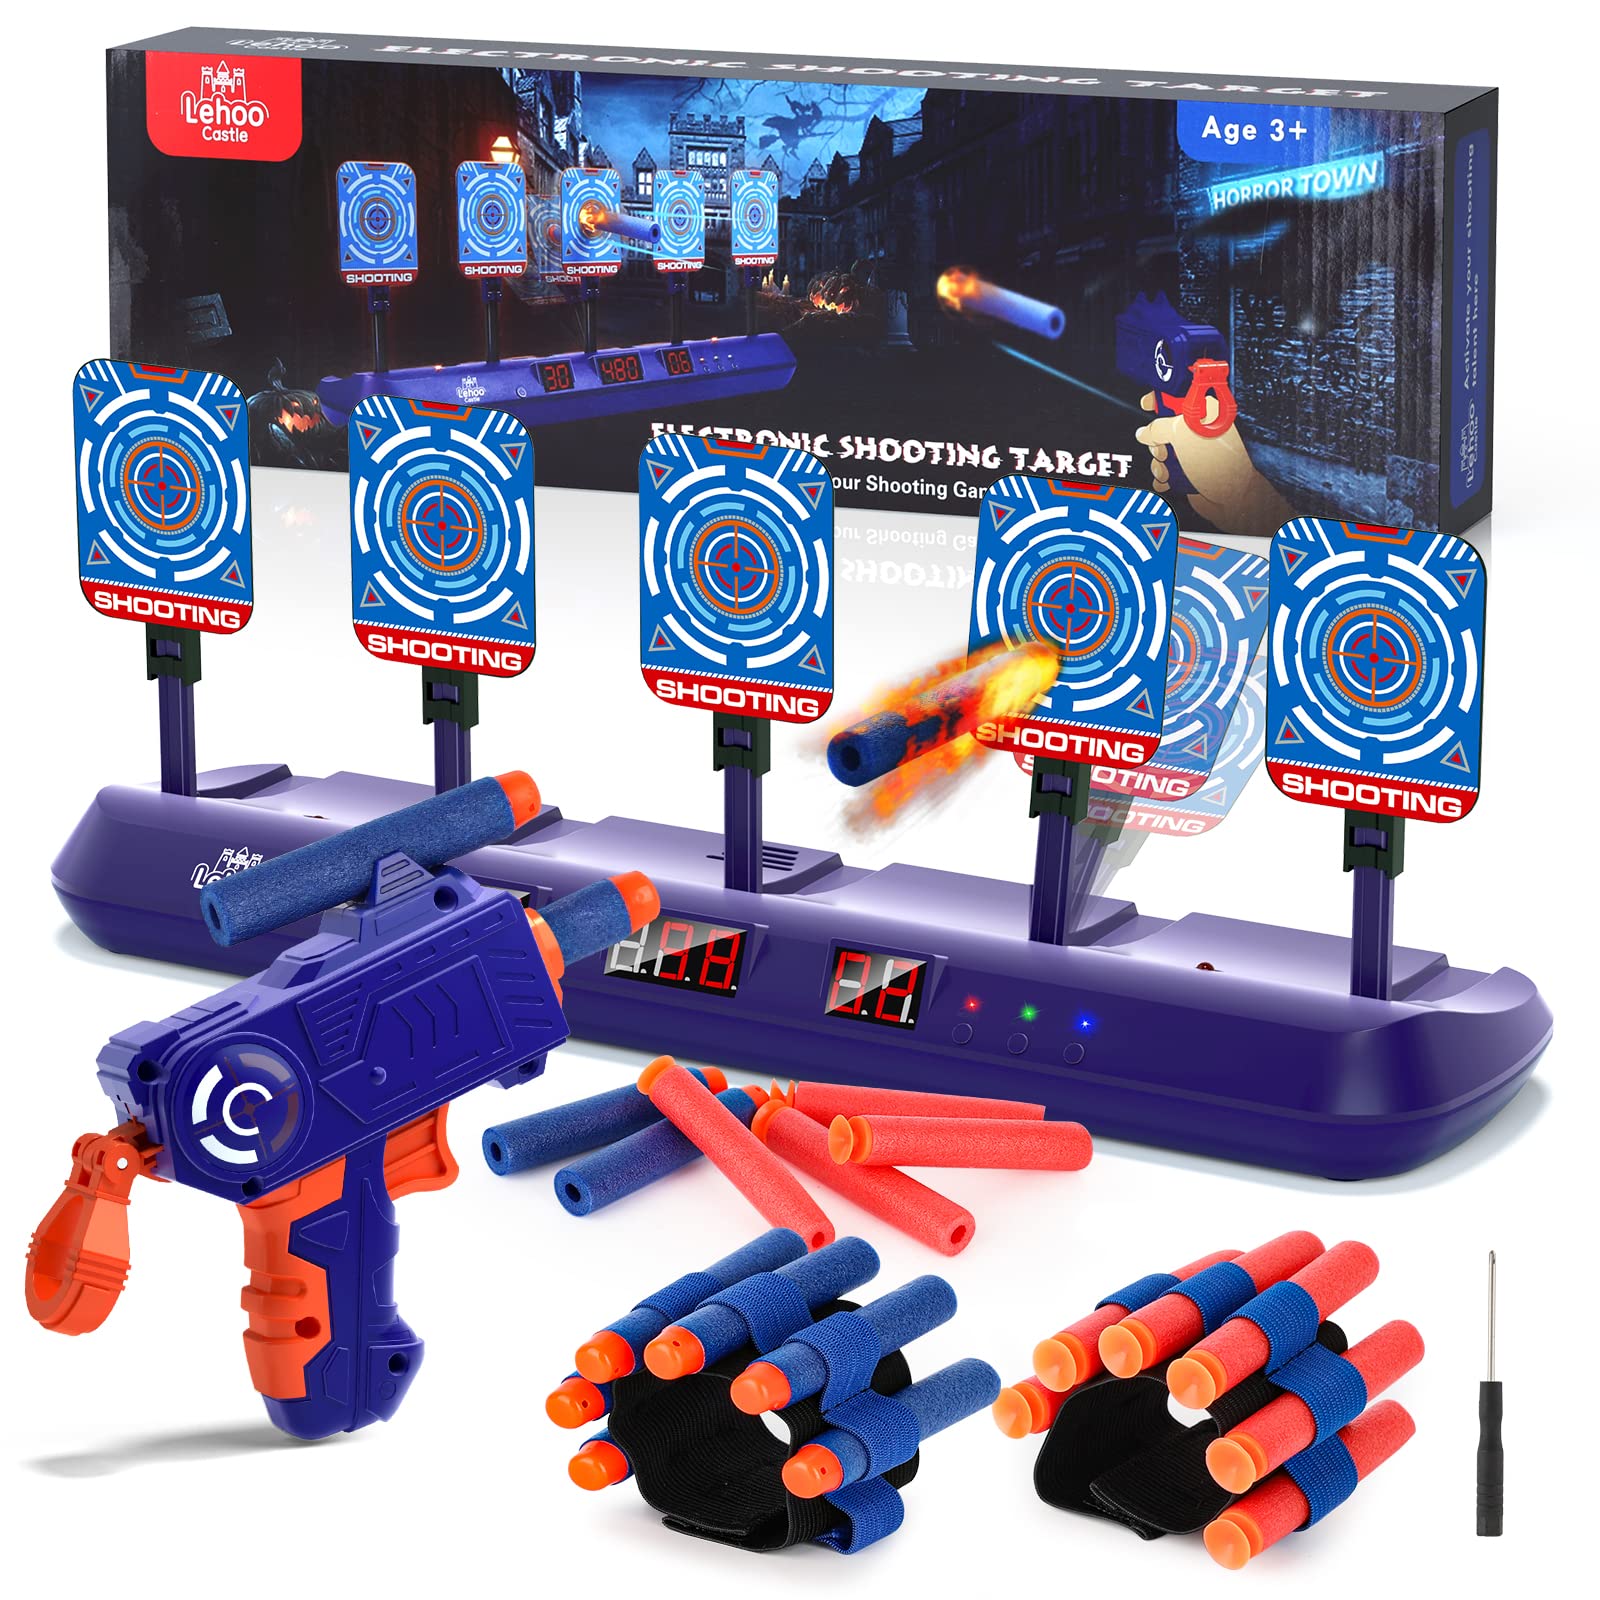 Lehoo Castle Nerf Zielscheibe, 5 Ziele Zielscheibe Elektrisch mit Spielzeugpistole, Auto-Reset Elektro-Schießscheiben mit Foam Darts Pfeile, Licht und Sounds, Geschenk für Jungen